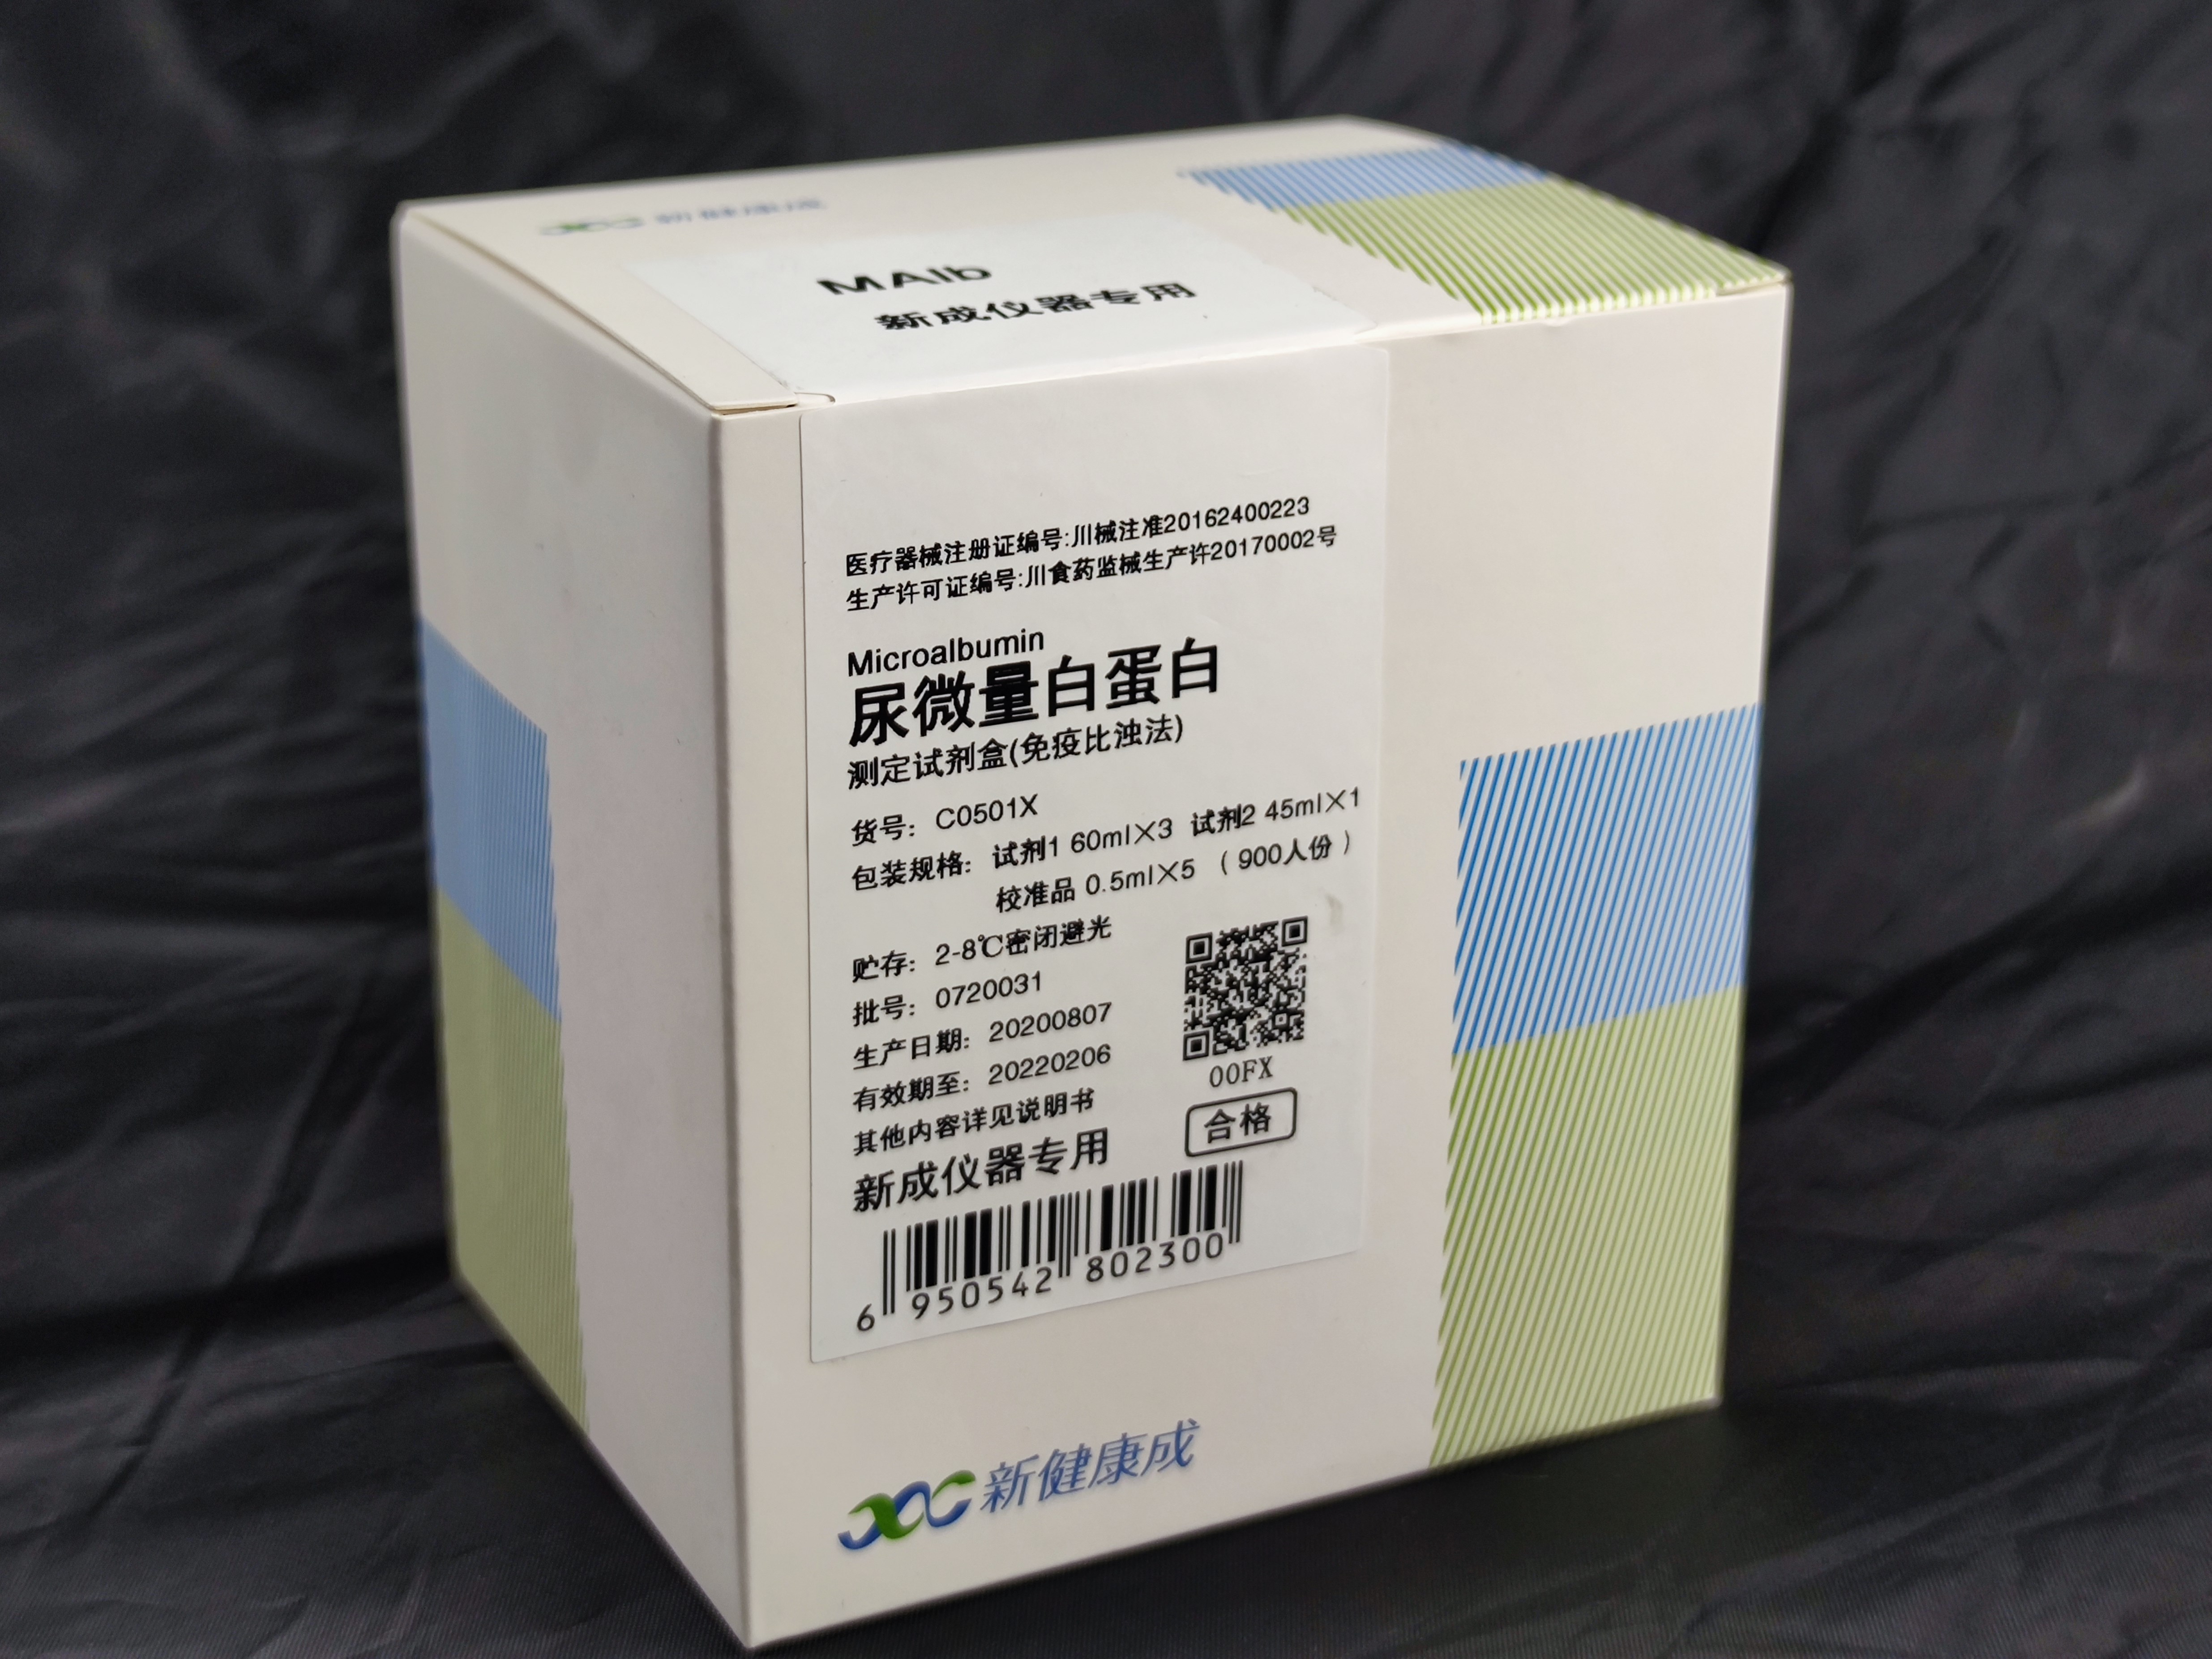 【新健康成】尿微量白蛋白测定试剂盒(免疫比浊法)